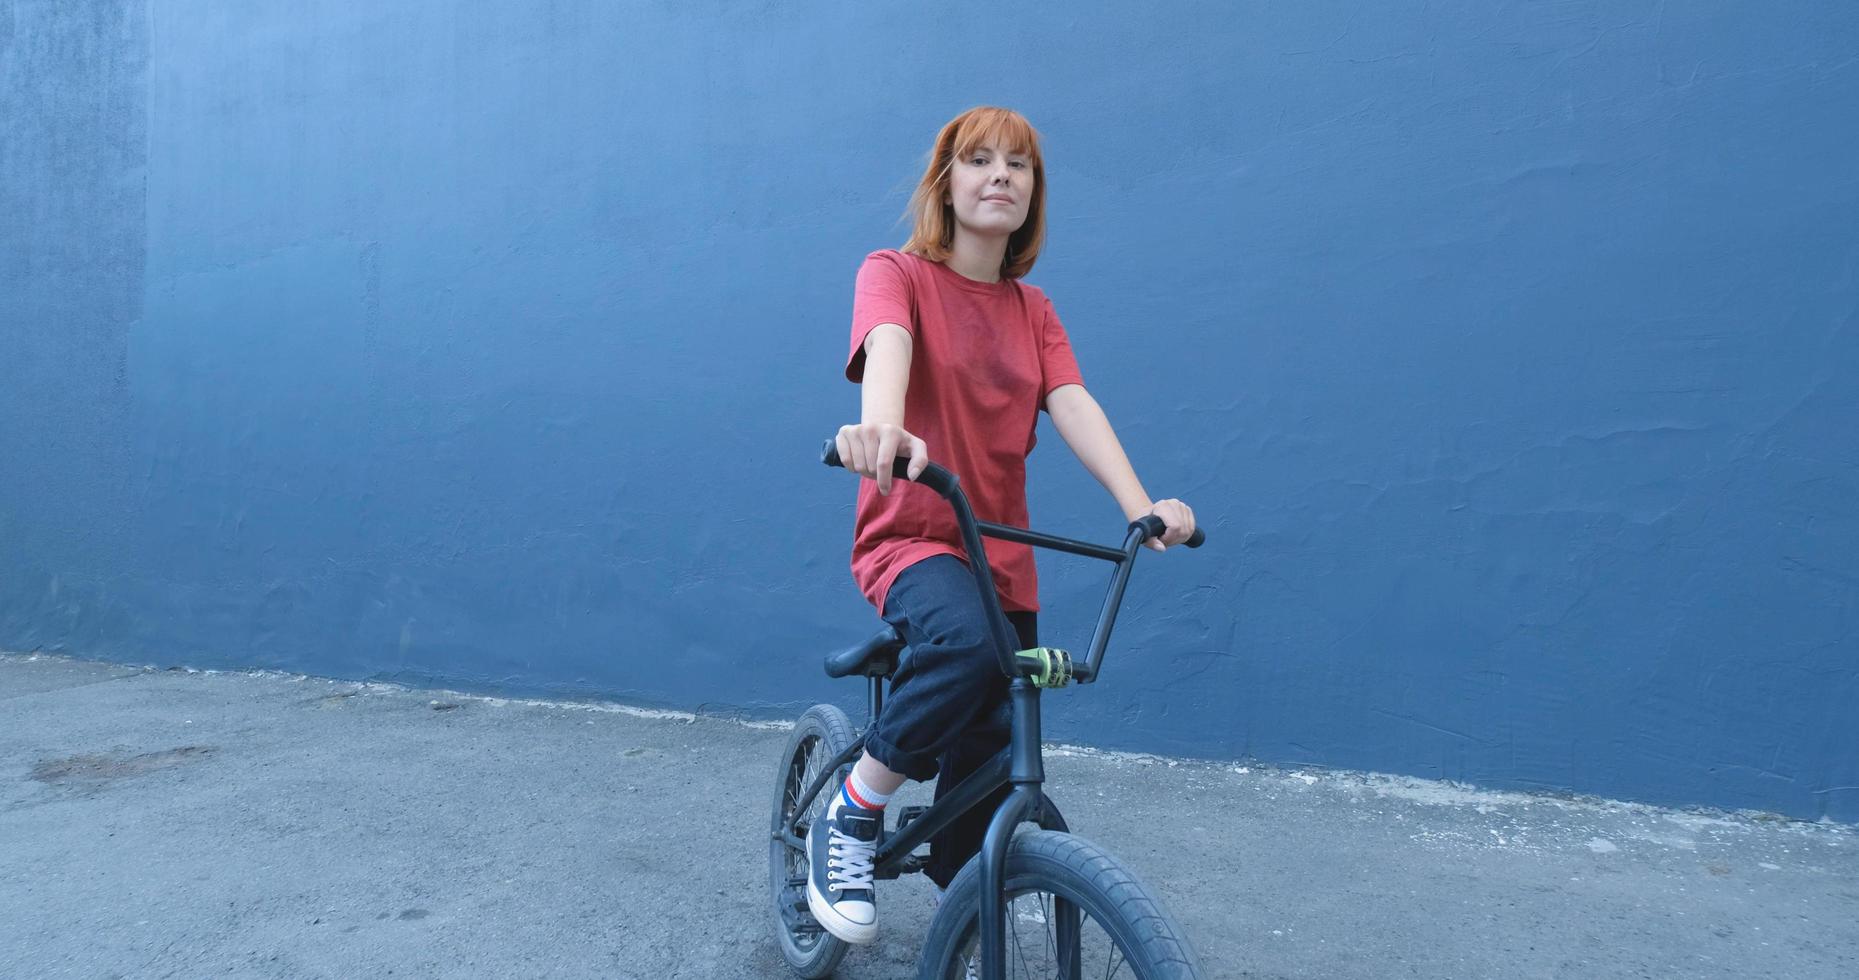 jonge vrouw poseren met bmx fiets buiten op straat foto